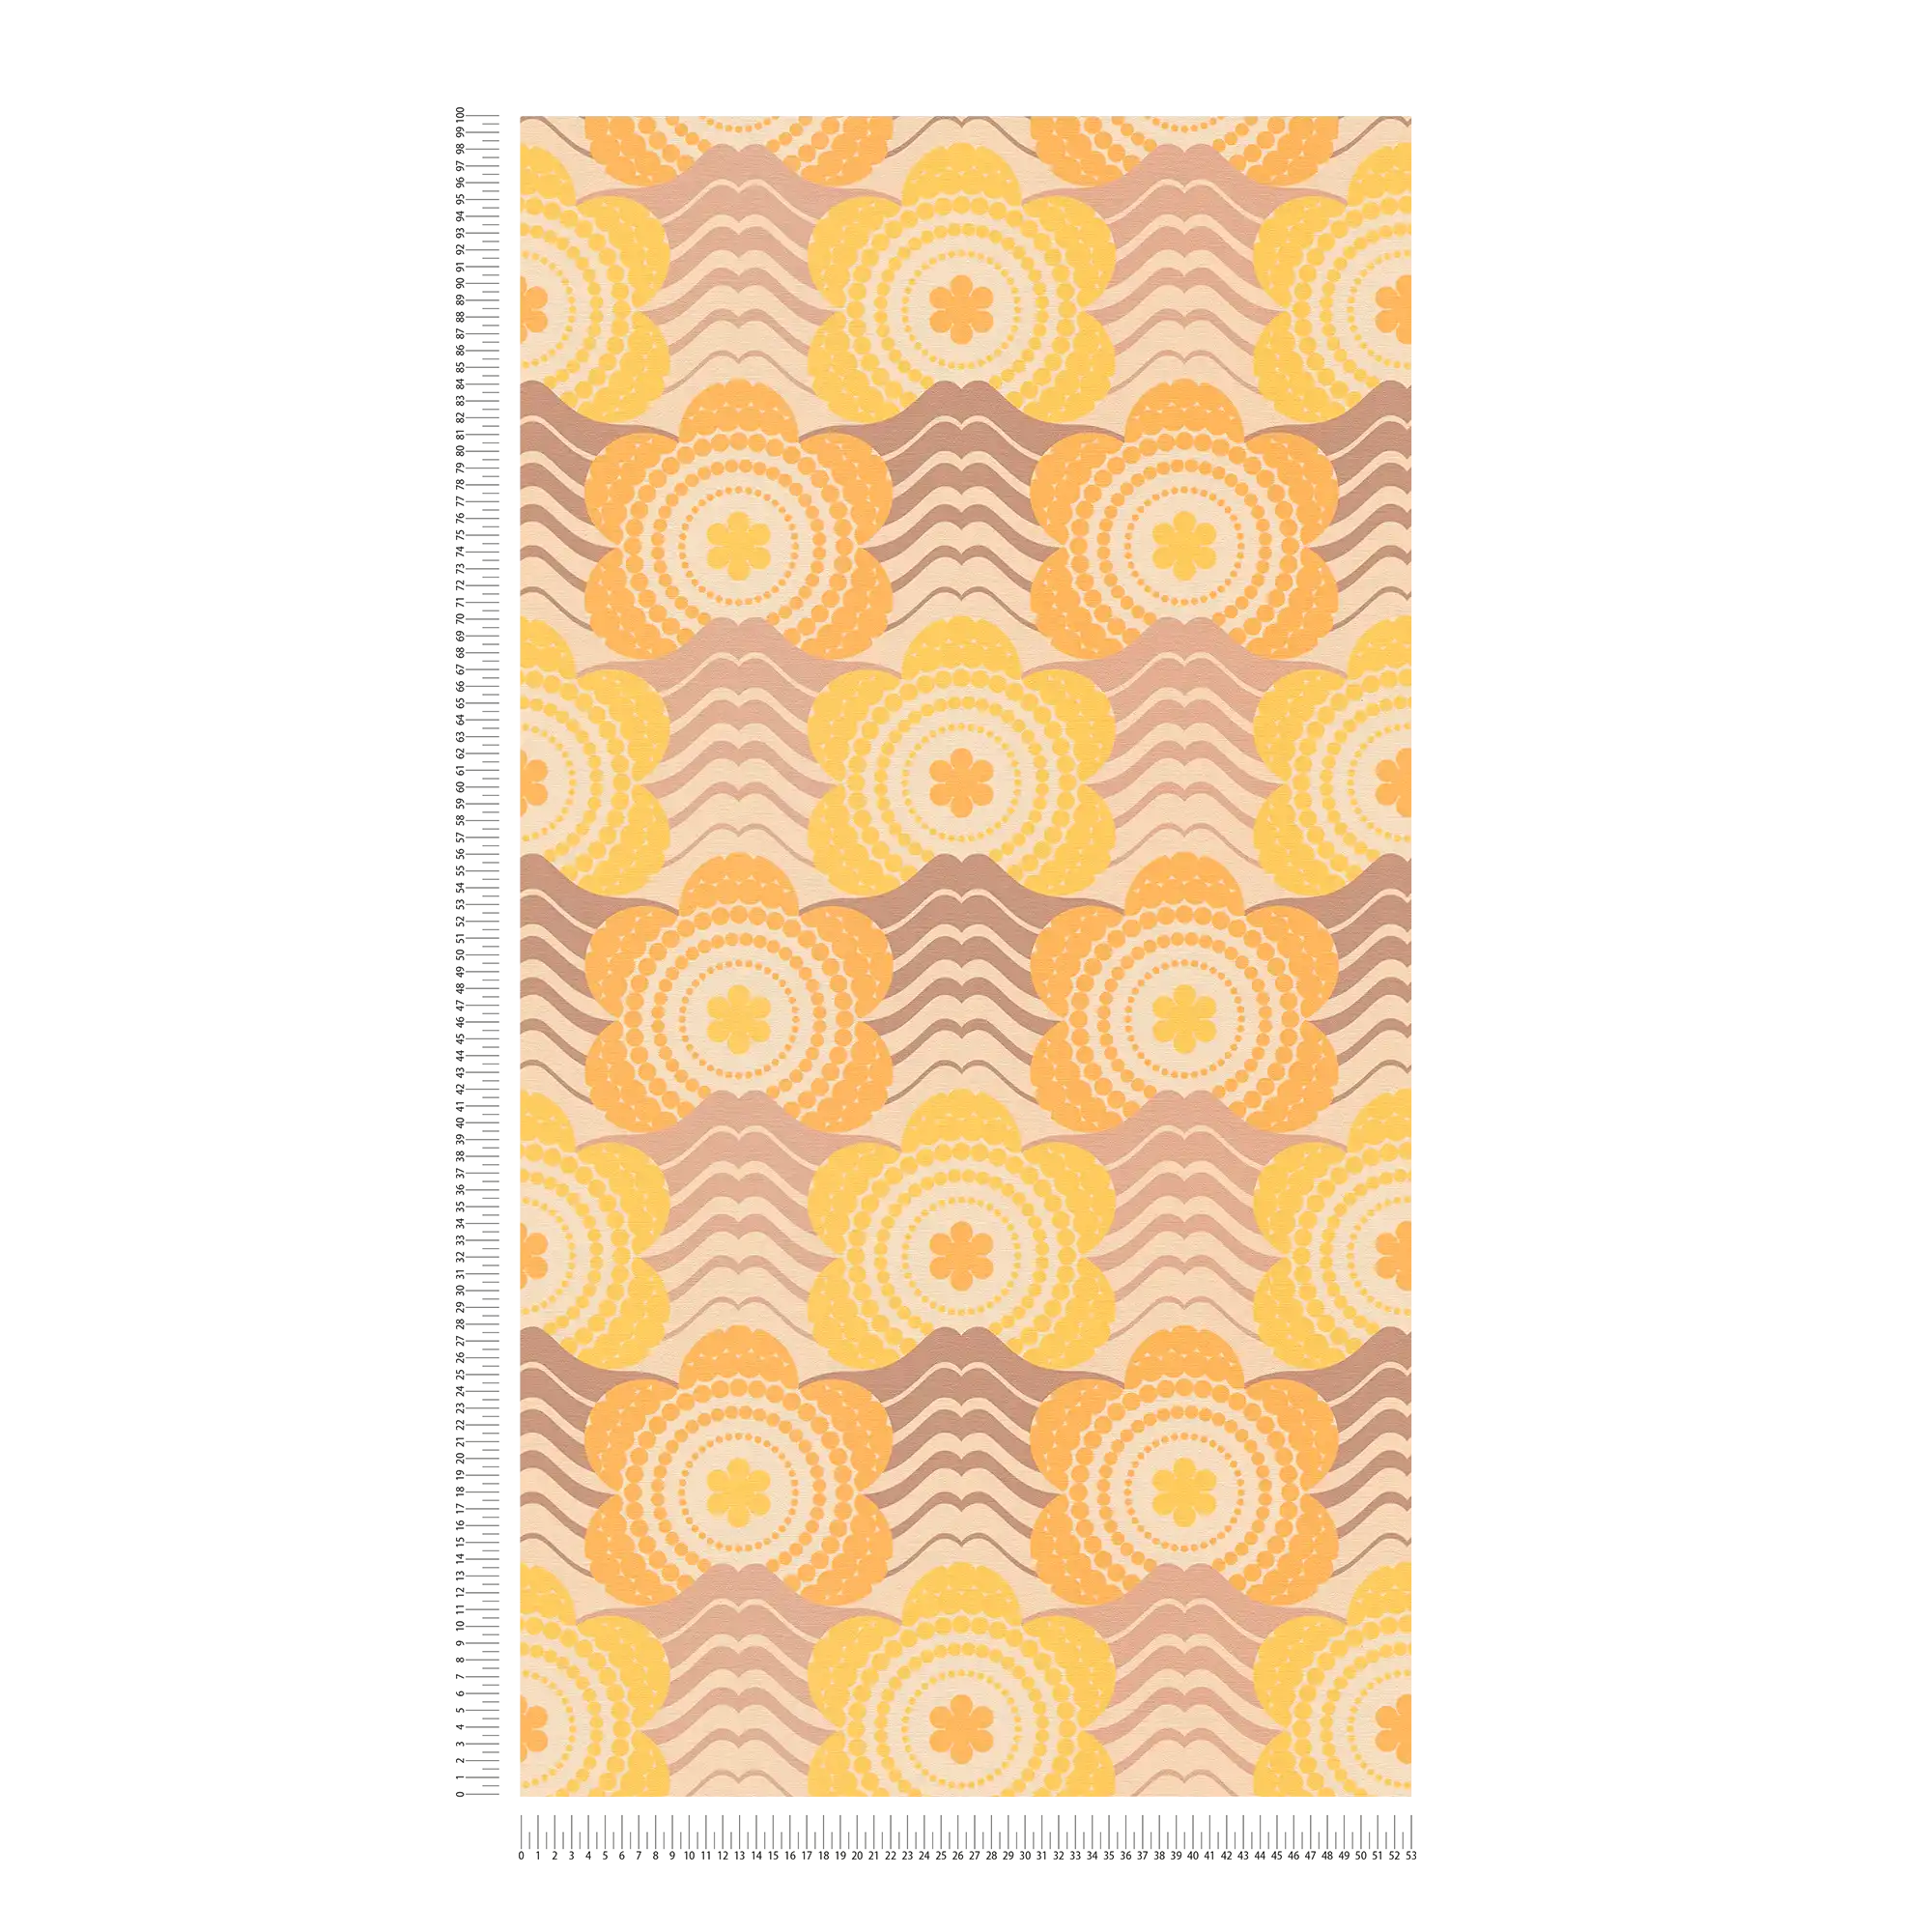             papier peint en papier intissé à motifs floraux dans le style des années 70 - beige, marron, orange
        